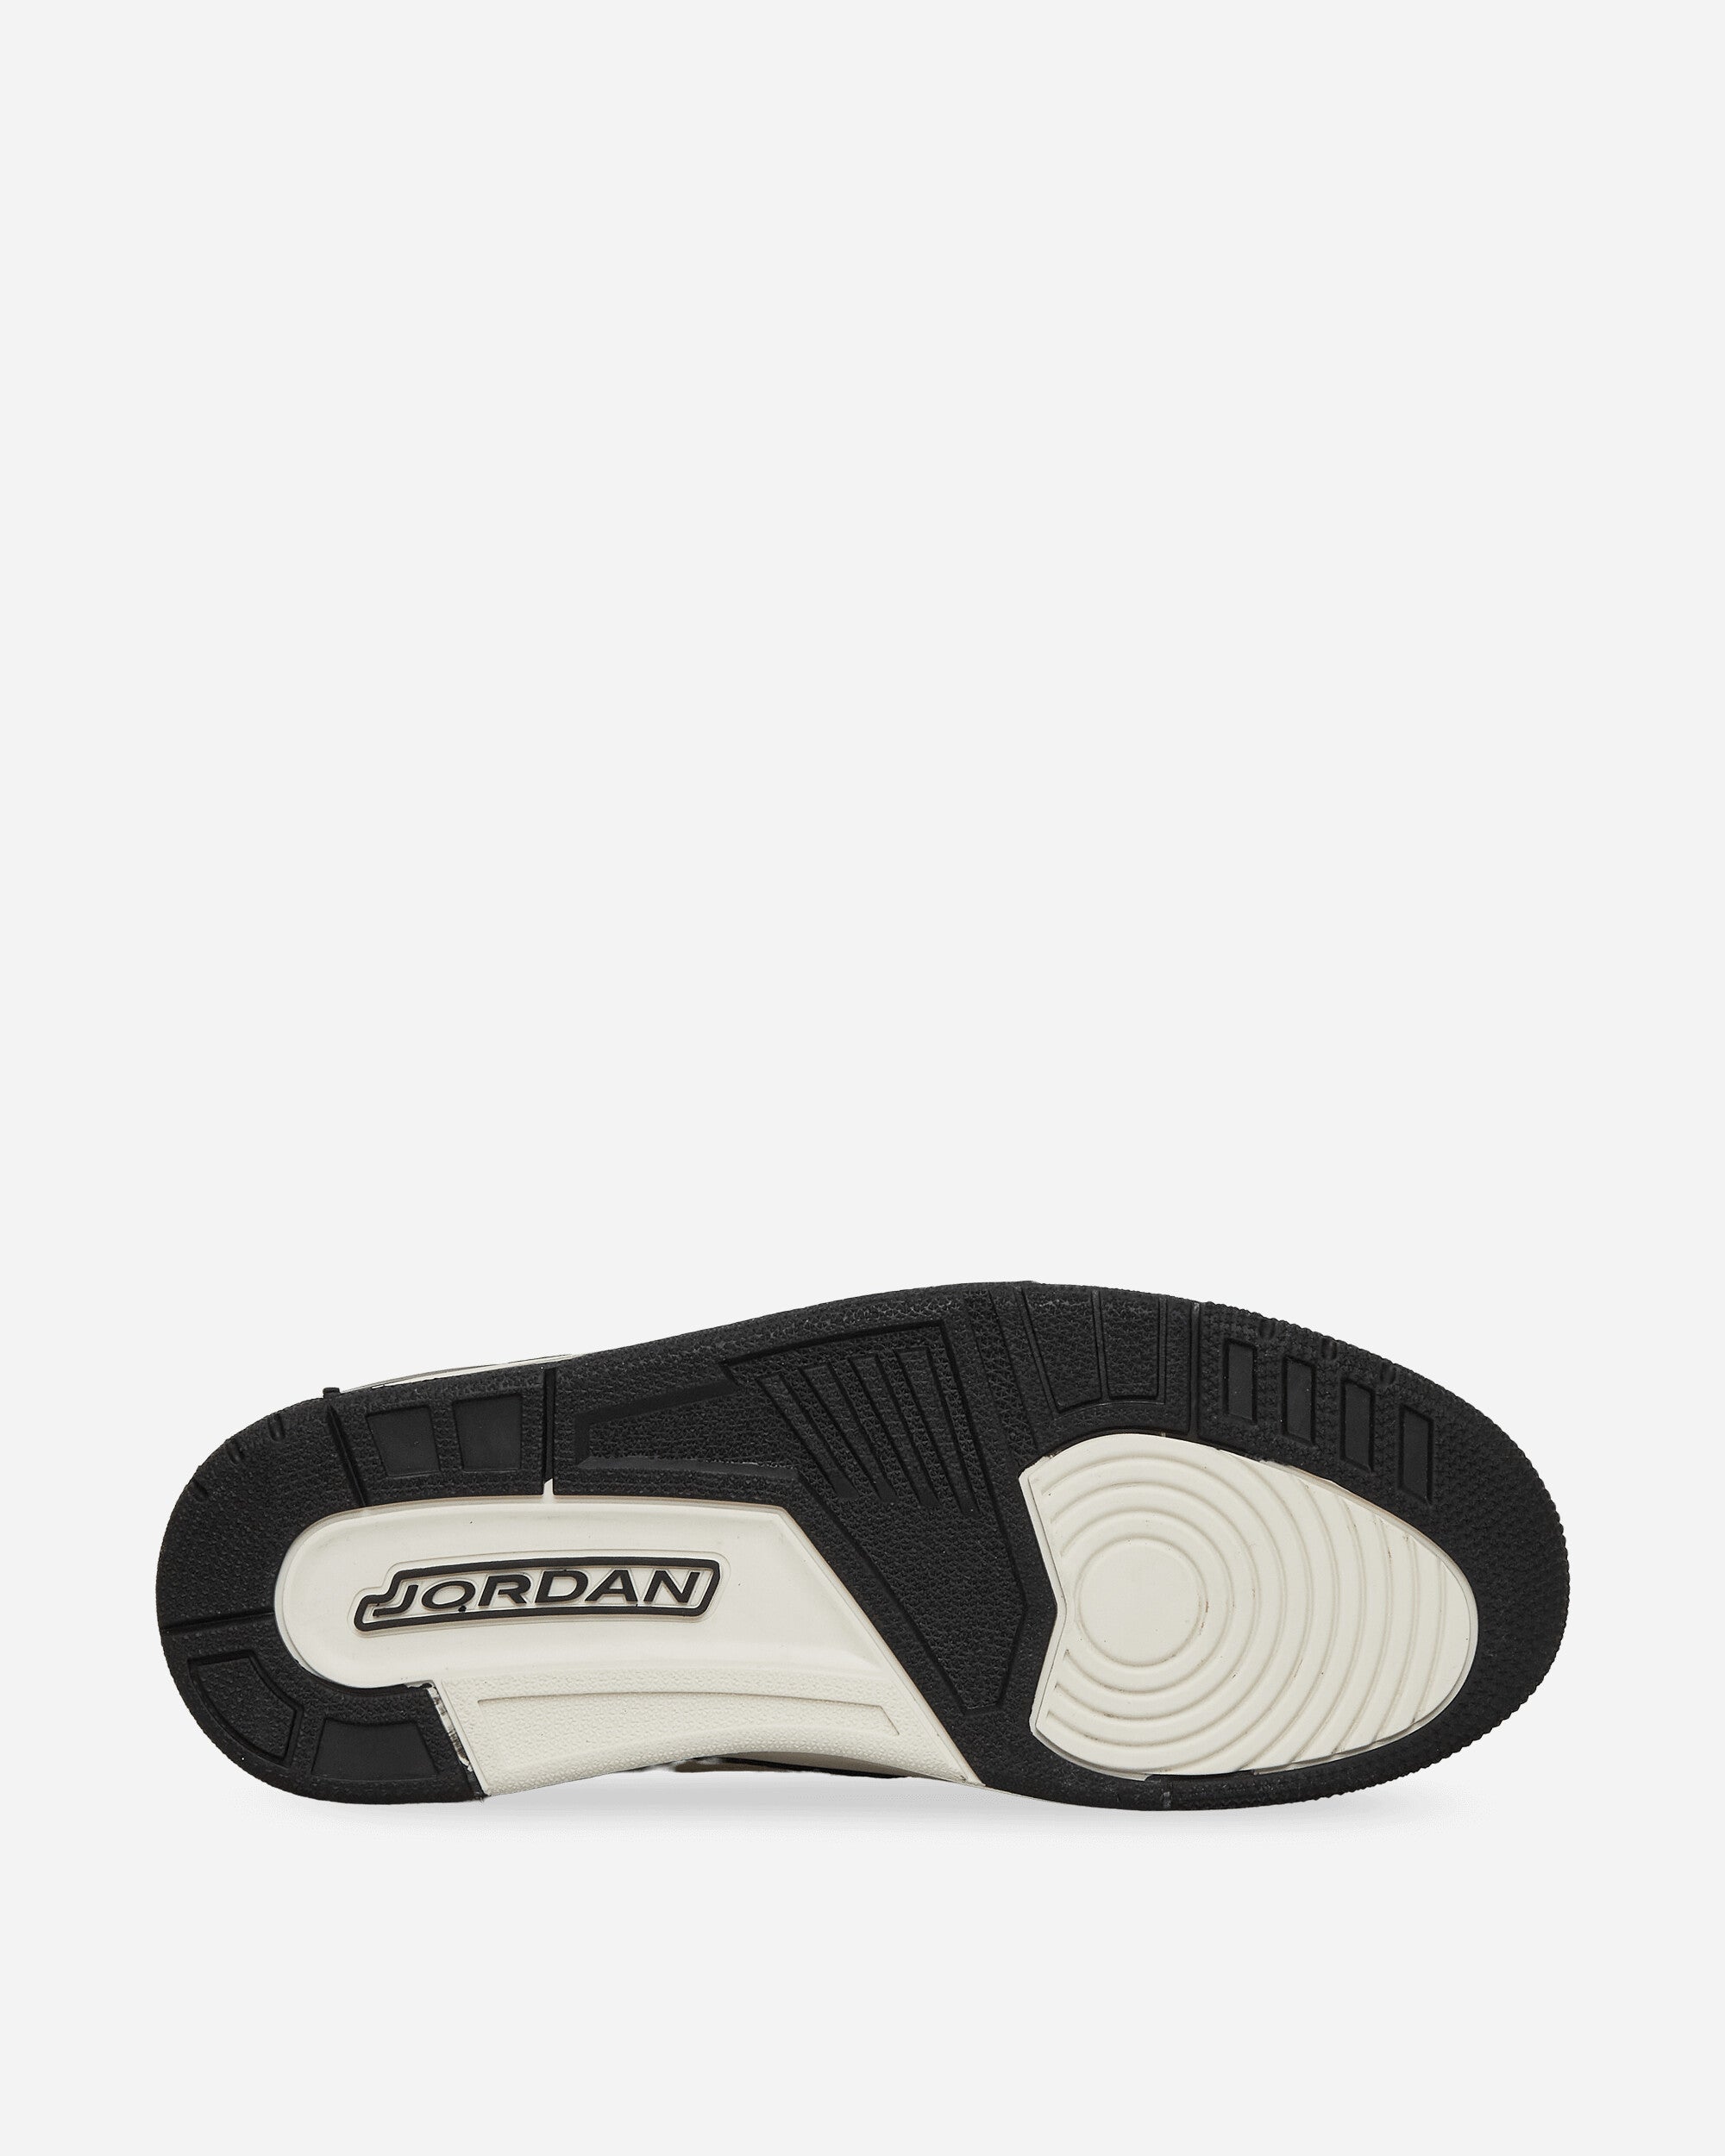 Nike Jordan Air Jordan Legacy 312 Low Black/Phantom Sneakers Low CD7069-001